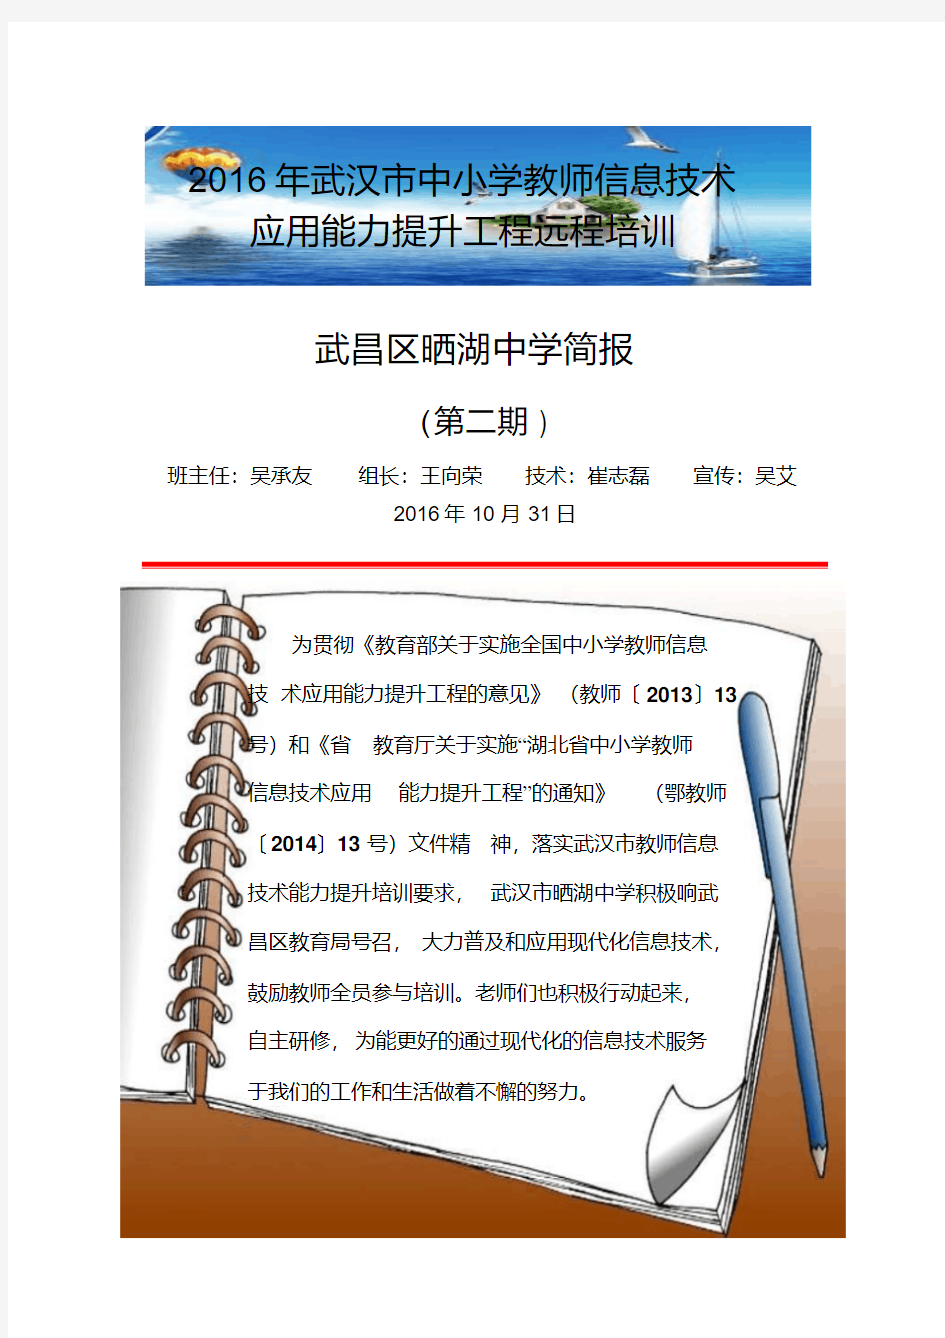 信息提升武汉市晒湖中学班简报(第二期)